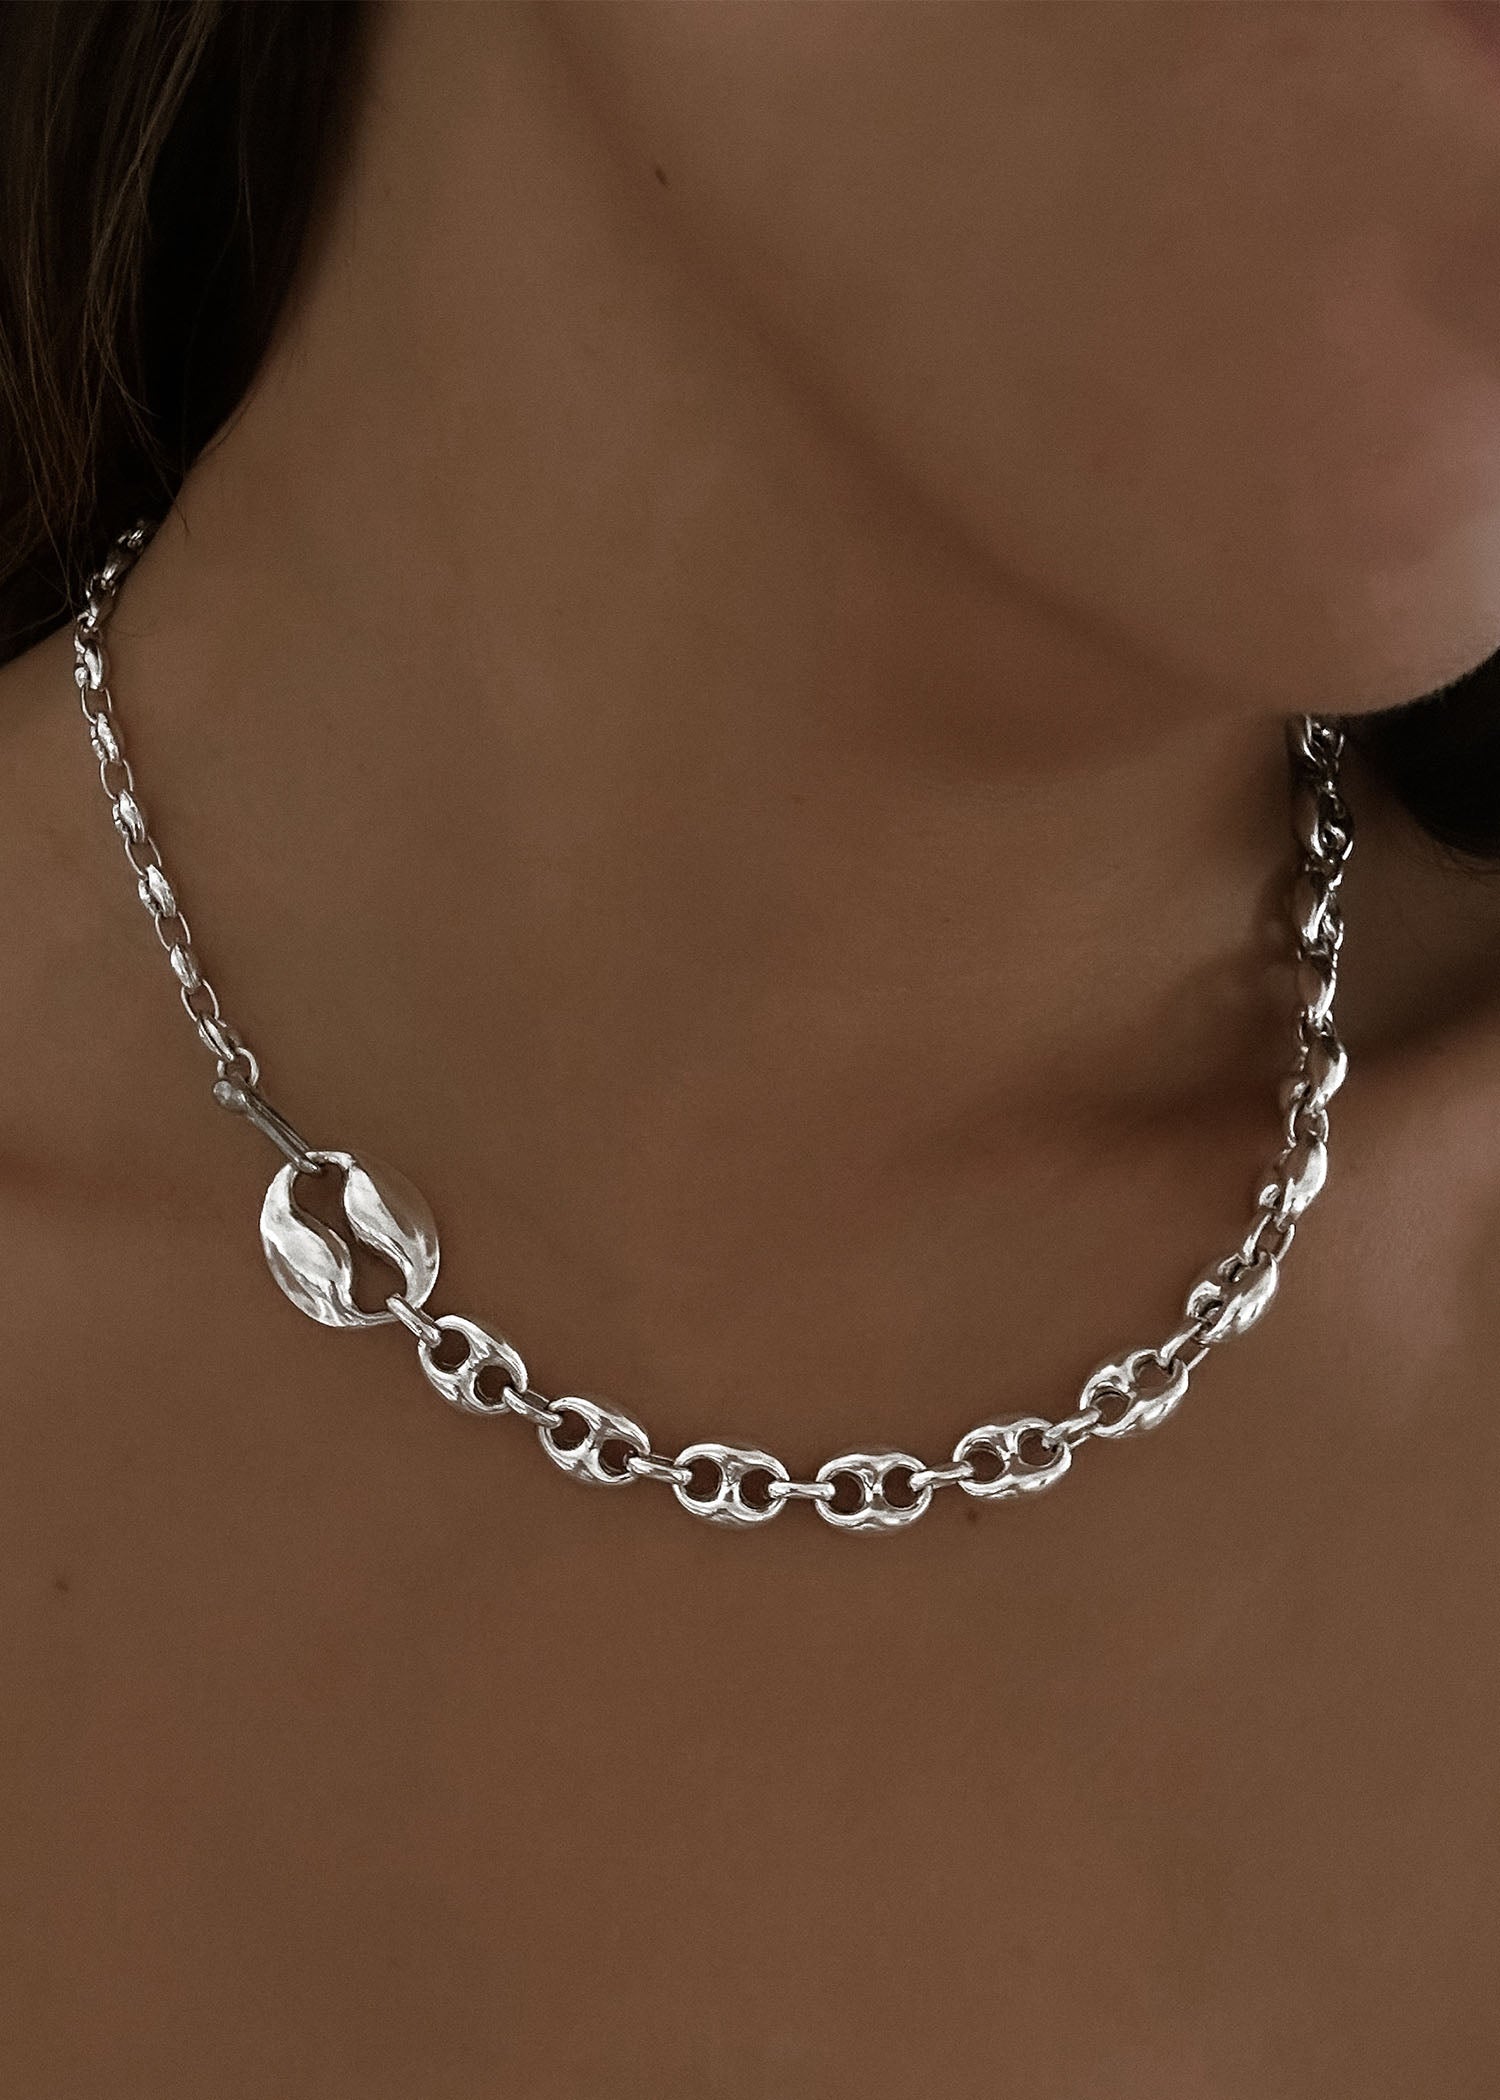 alt="Iris Mariner Chain Necklace"